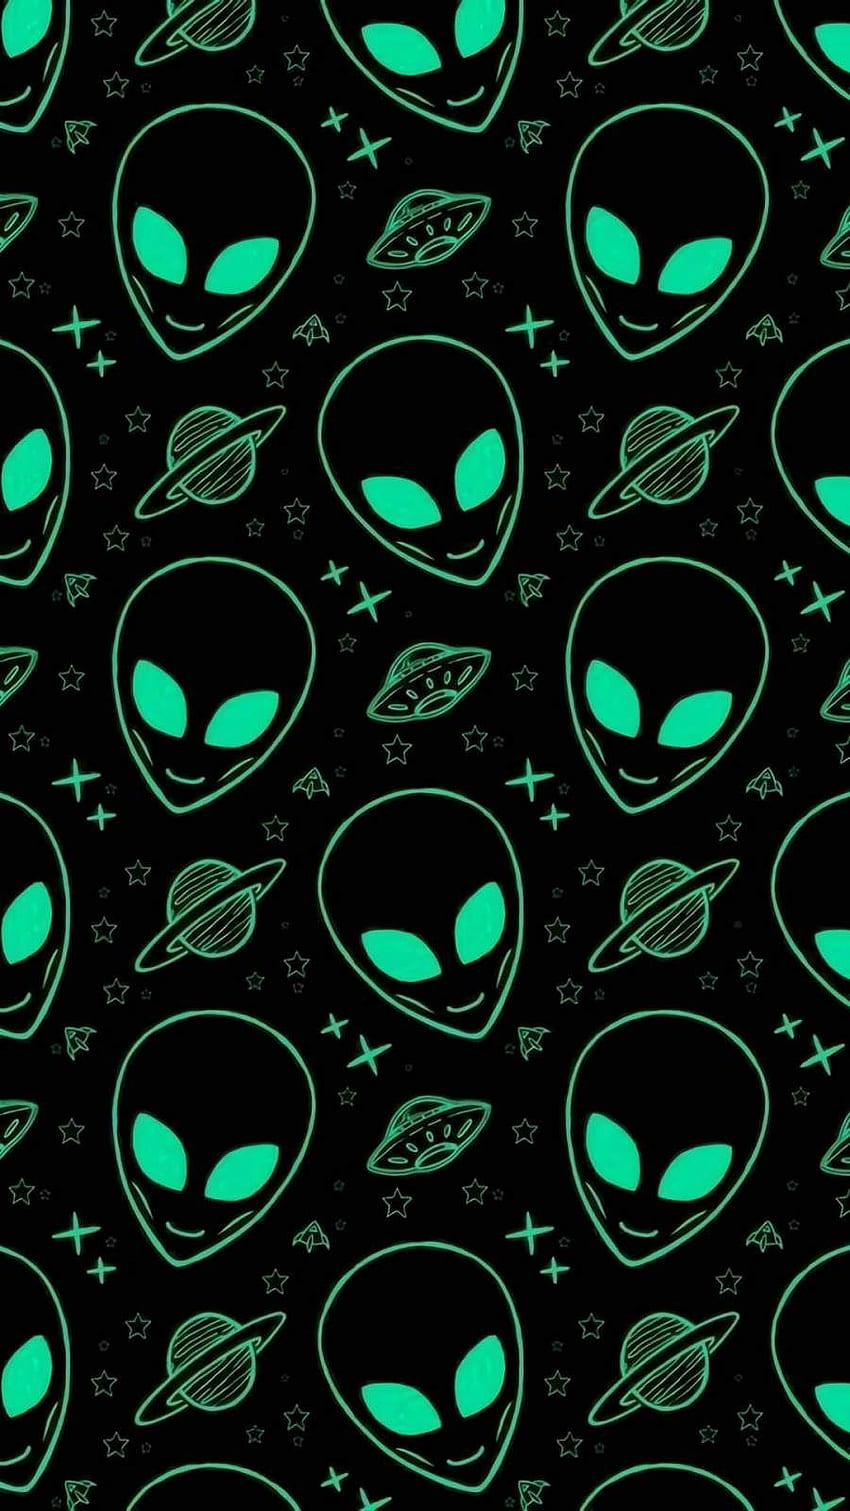 alien wallpaper